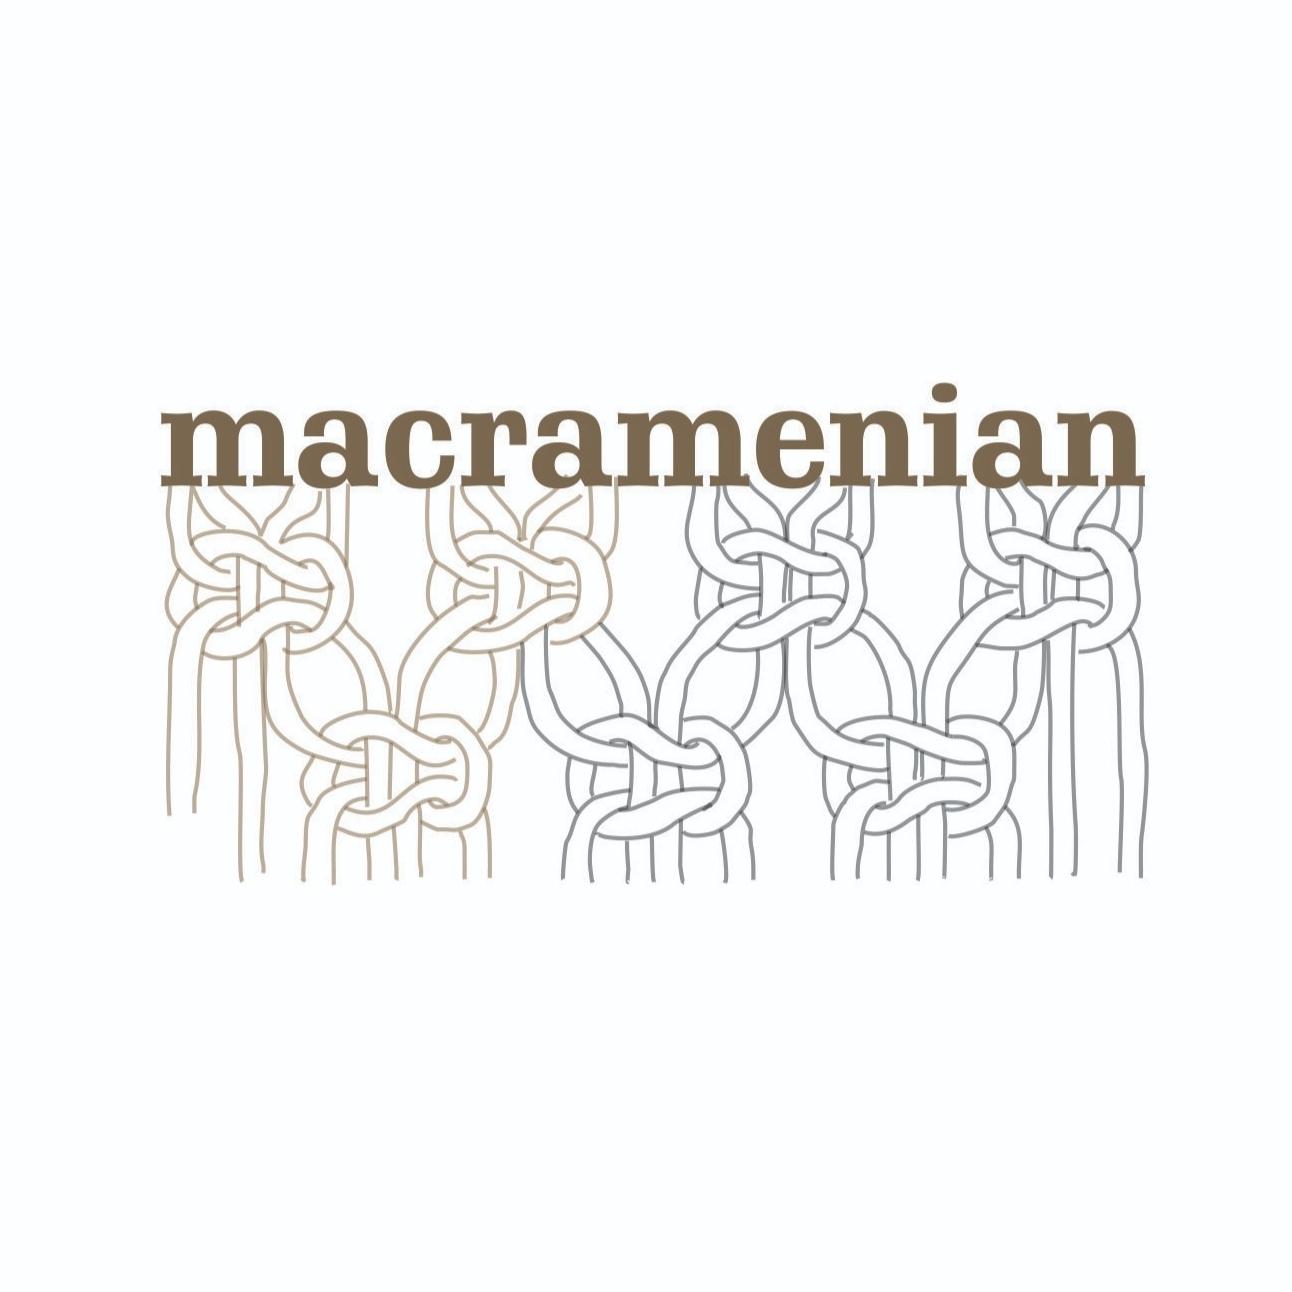 macramenian's images